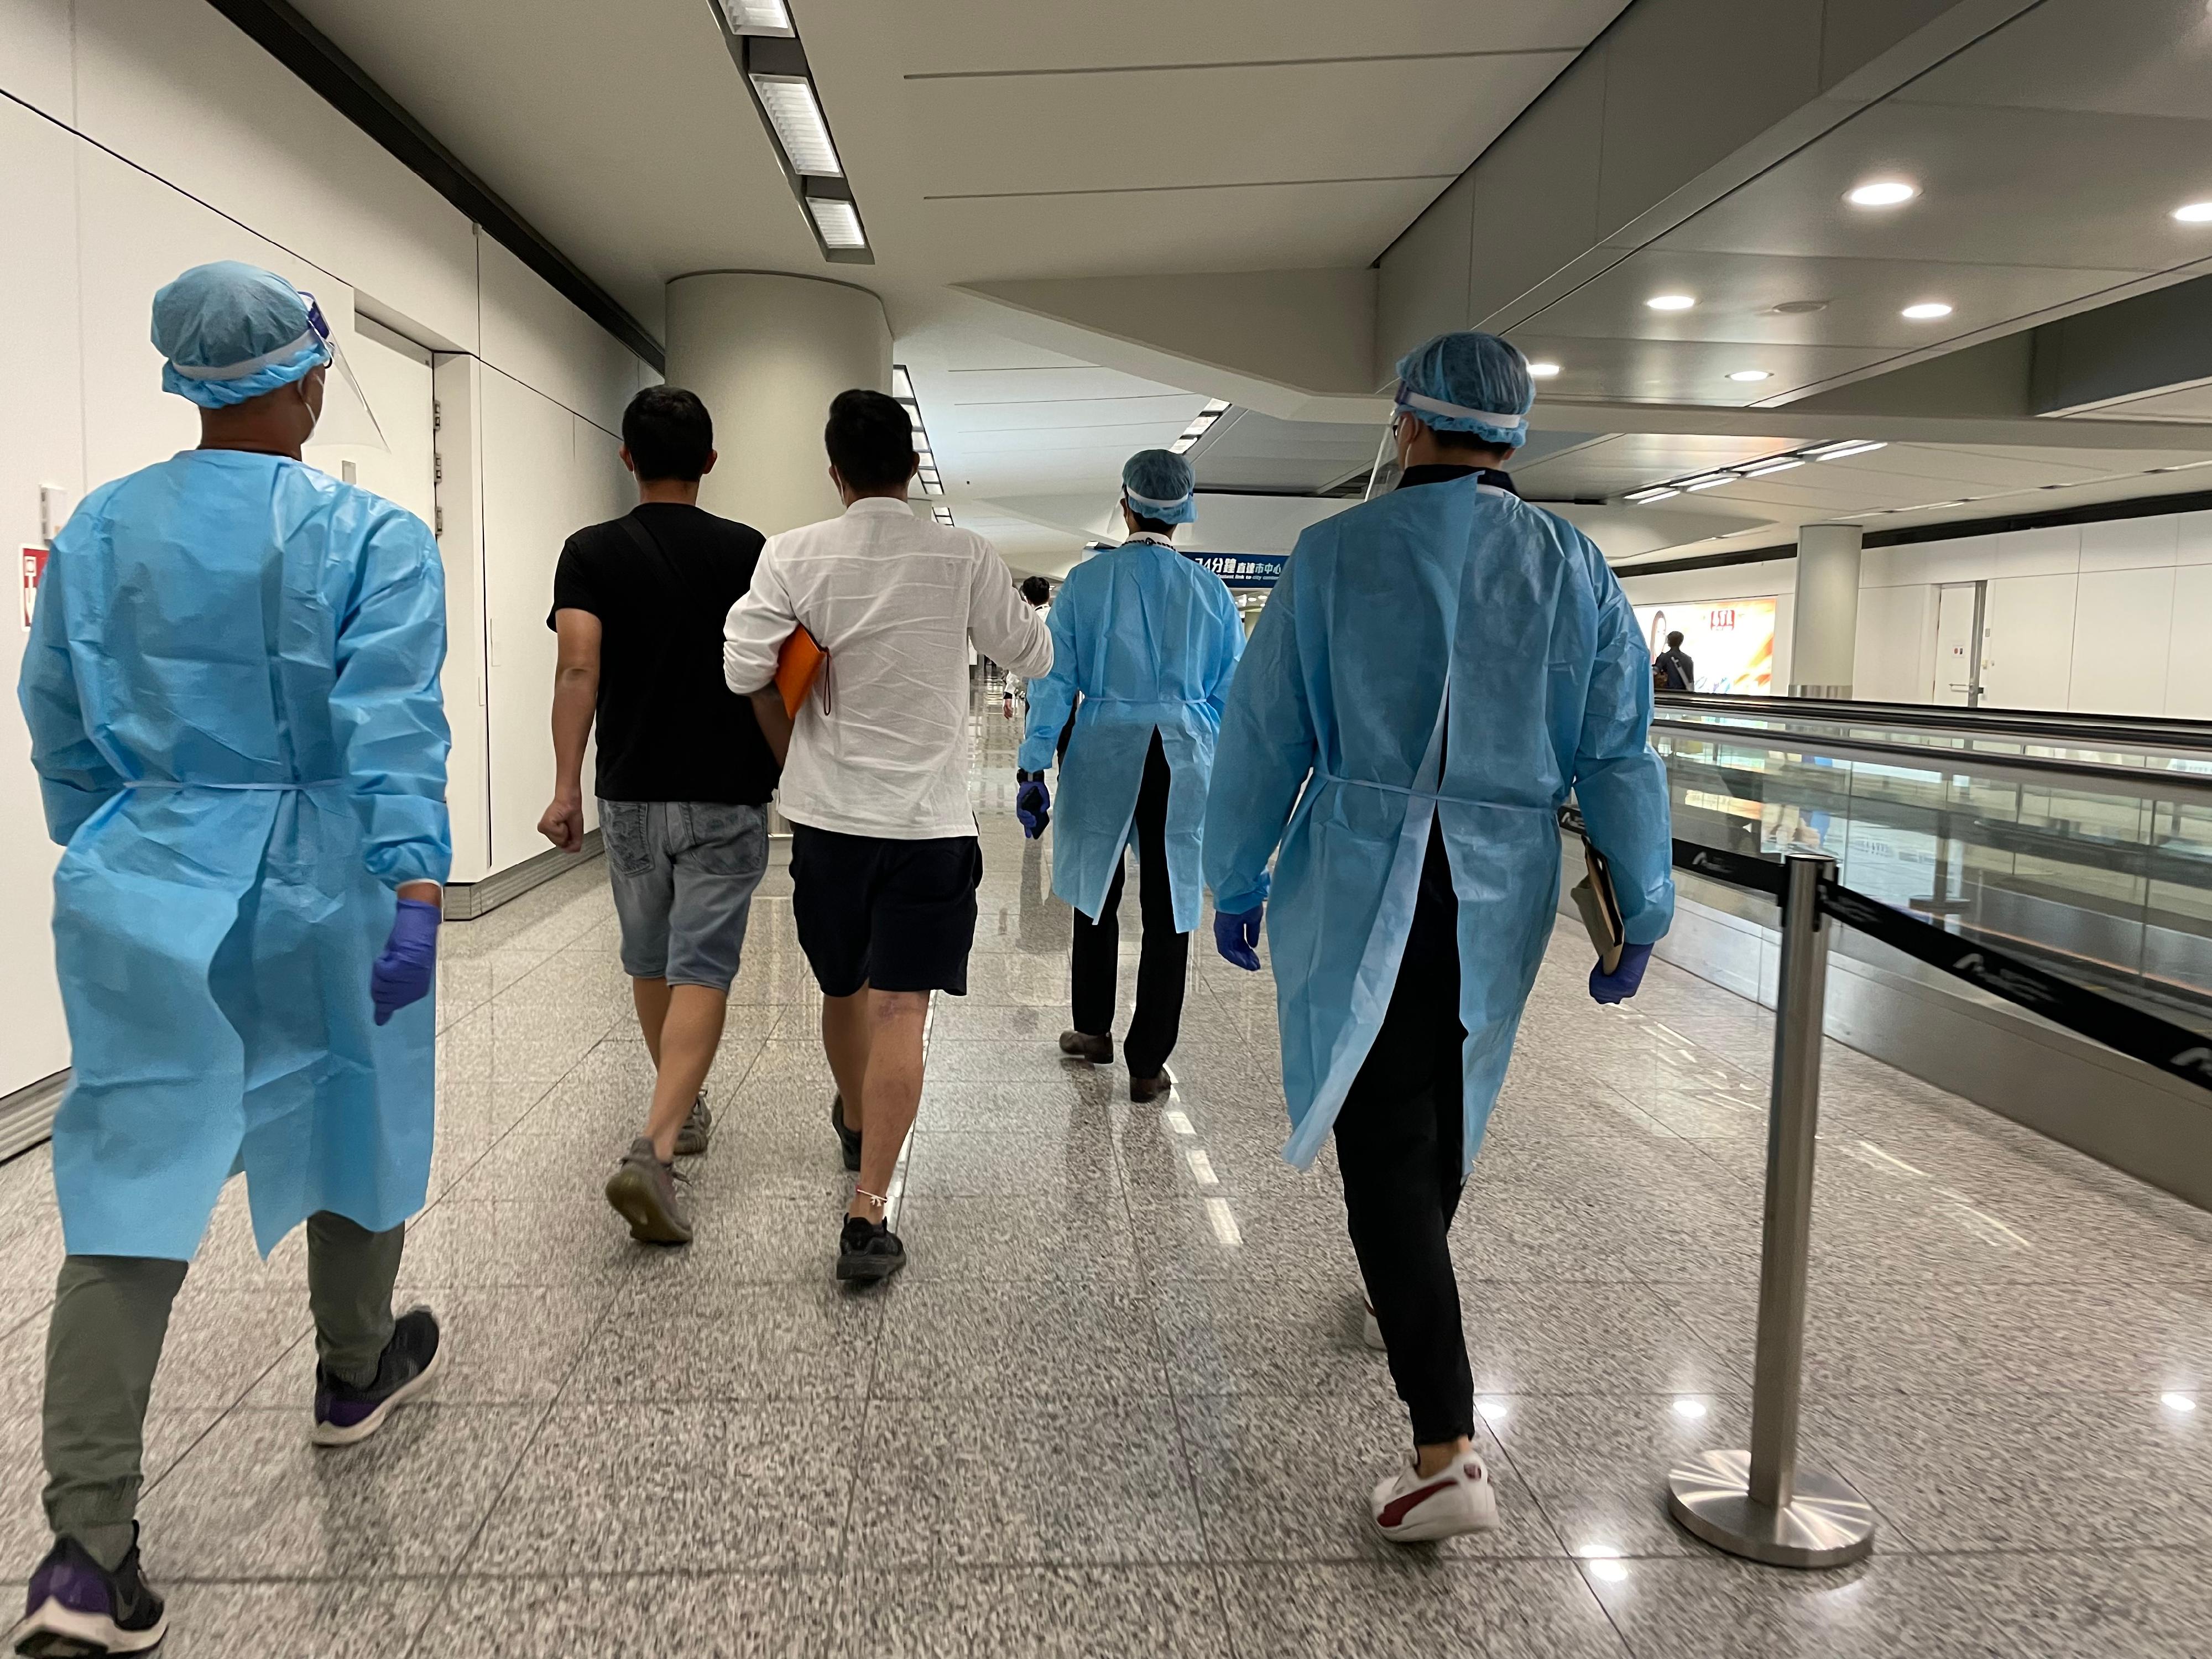 今日（八月二十五日）三名求助港人安全抵达香港国际机场。图示穿上防护装备的入境处人员，协助有关求助港人前往专用入境柜台办理出入境手续。